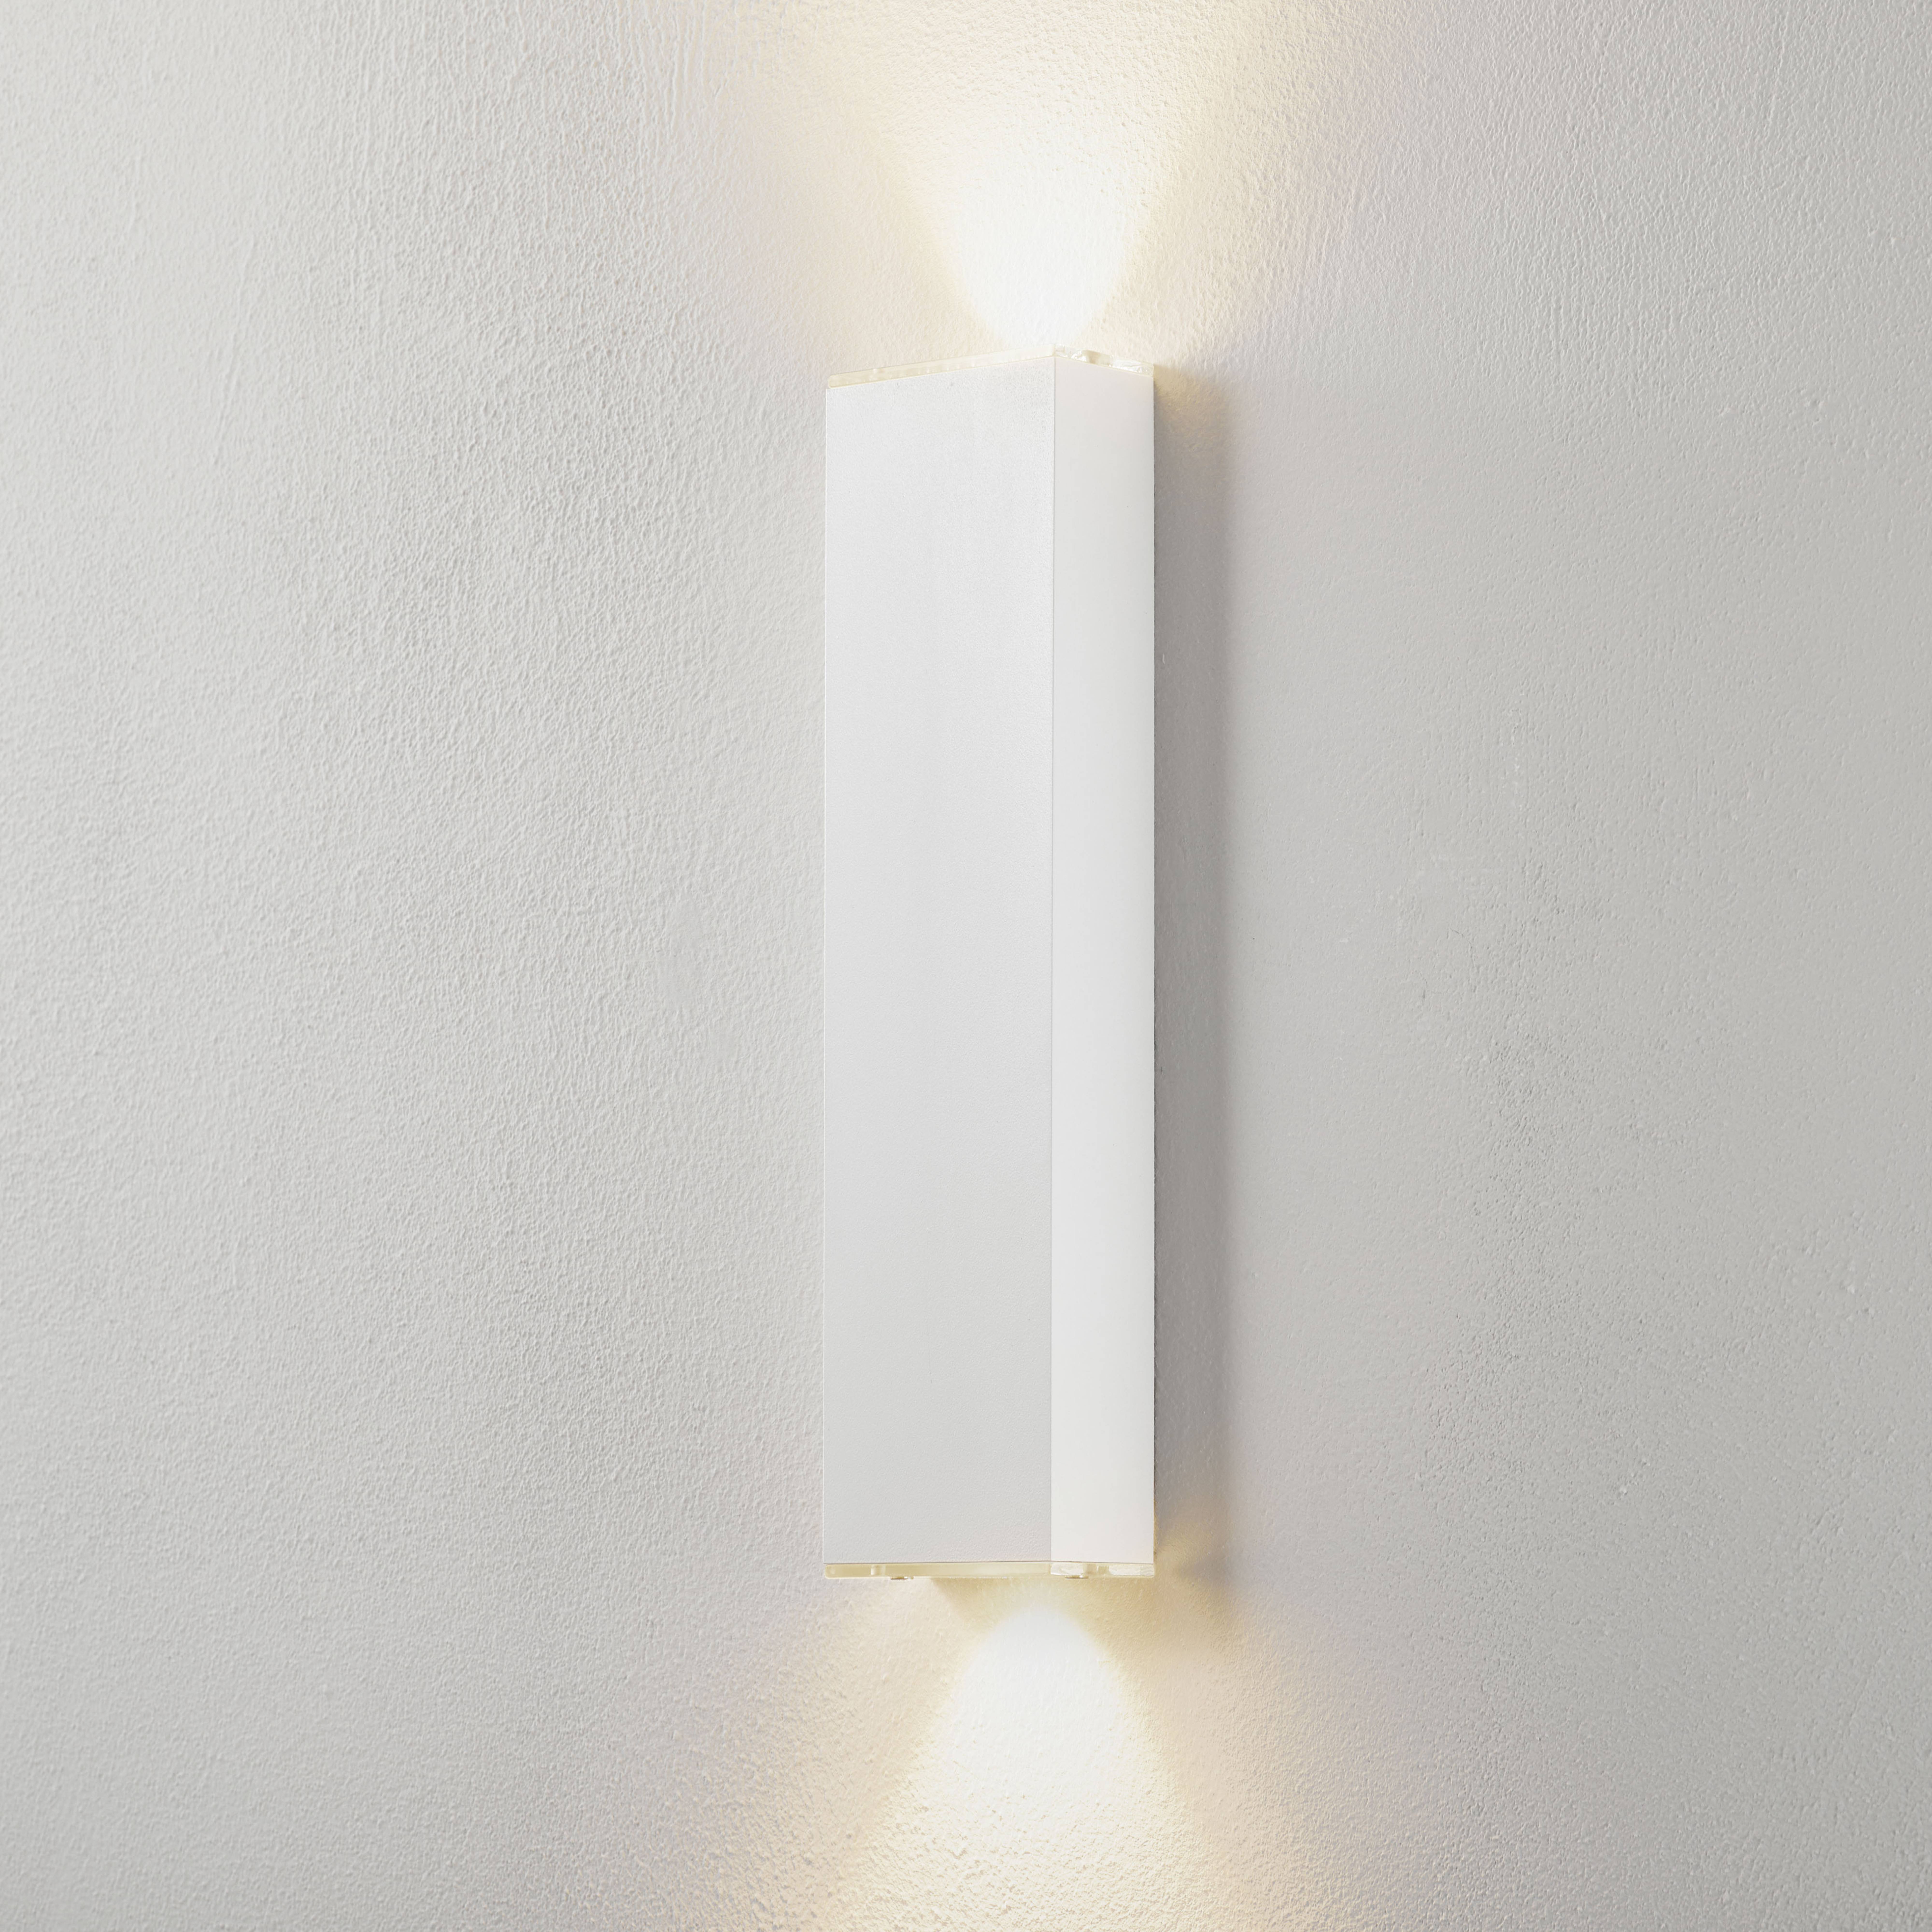 Lucande Anita aplique LED blanco altura 36 cm